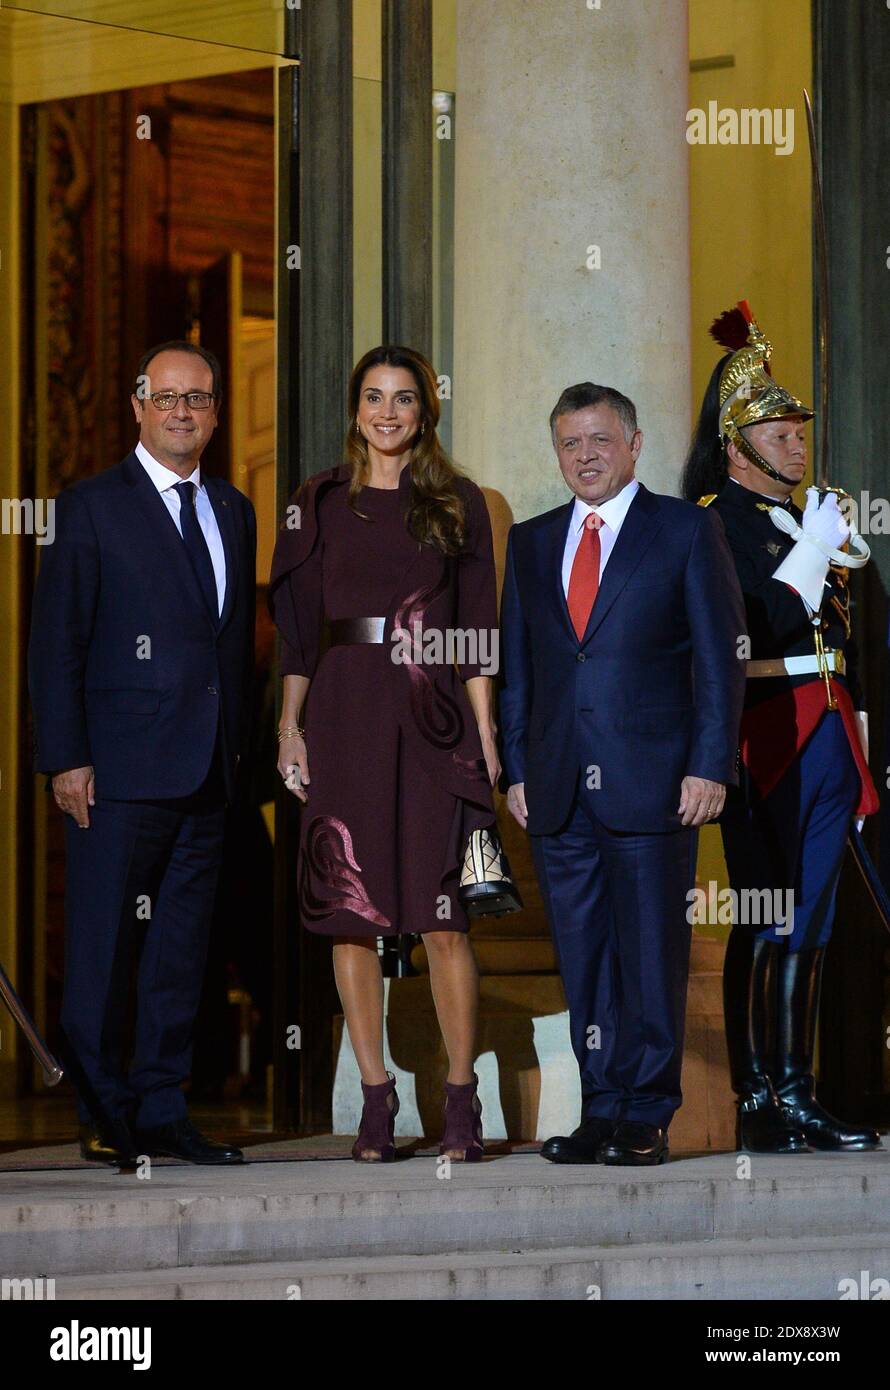 Le président français François Hollande reçoit la reine Rania Al Abdullah et le roi Abdallah II de Jordanie pour un dîner à l'Elysée Palace à Paris, France, le 17 septembre 2014. Photo de Christian Liewig/ABACAPRESS.COM Banque D'Images